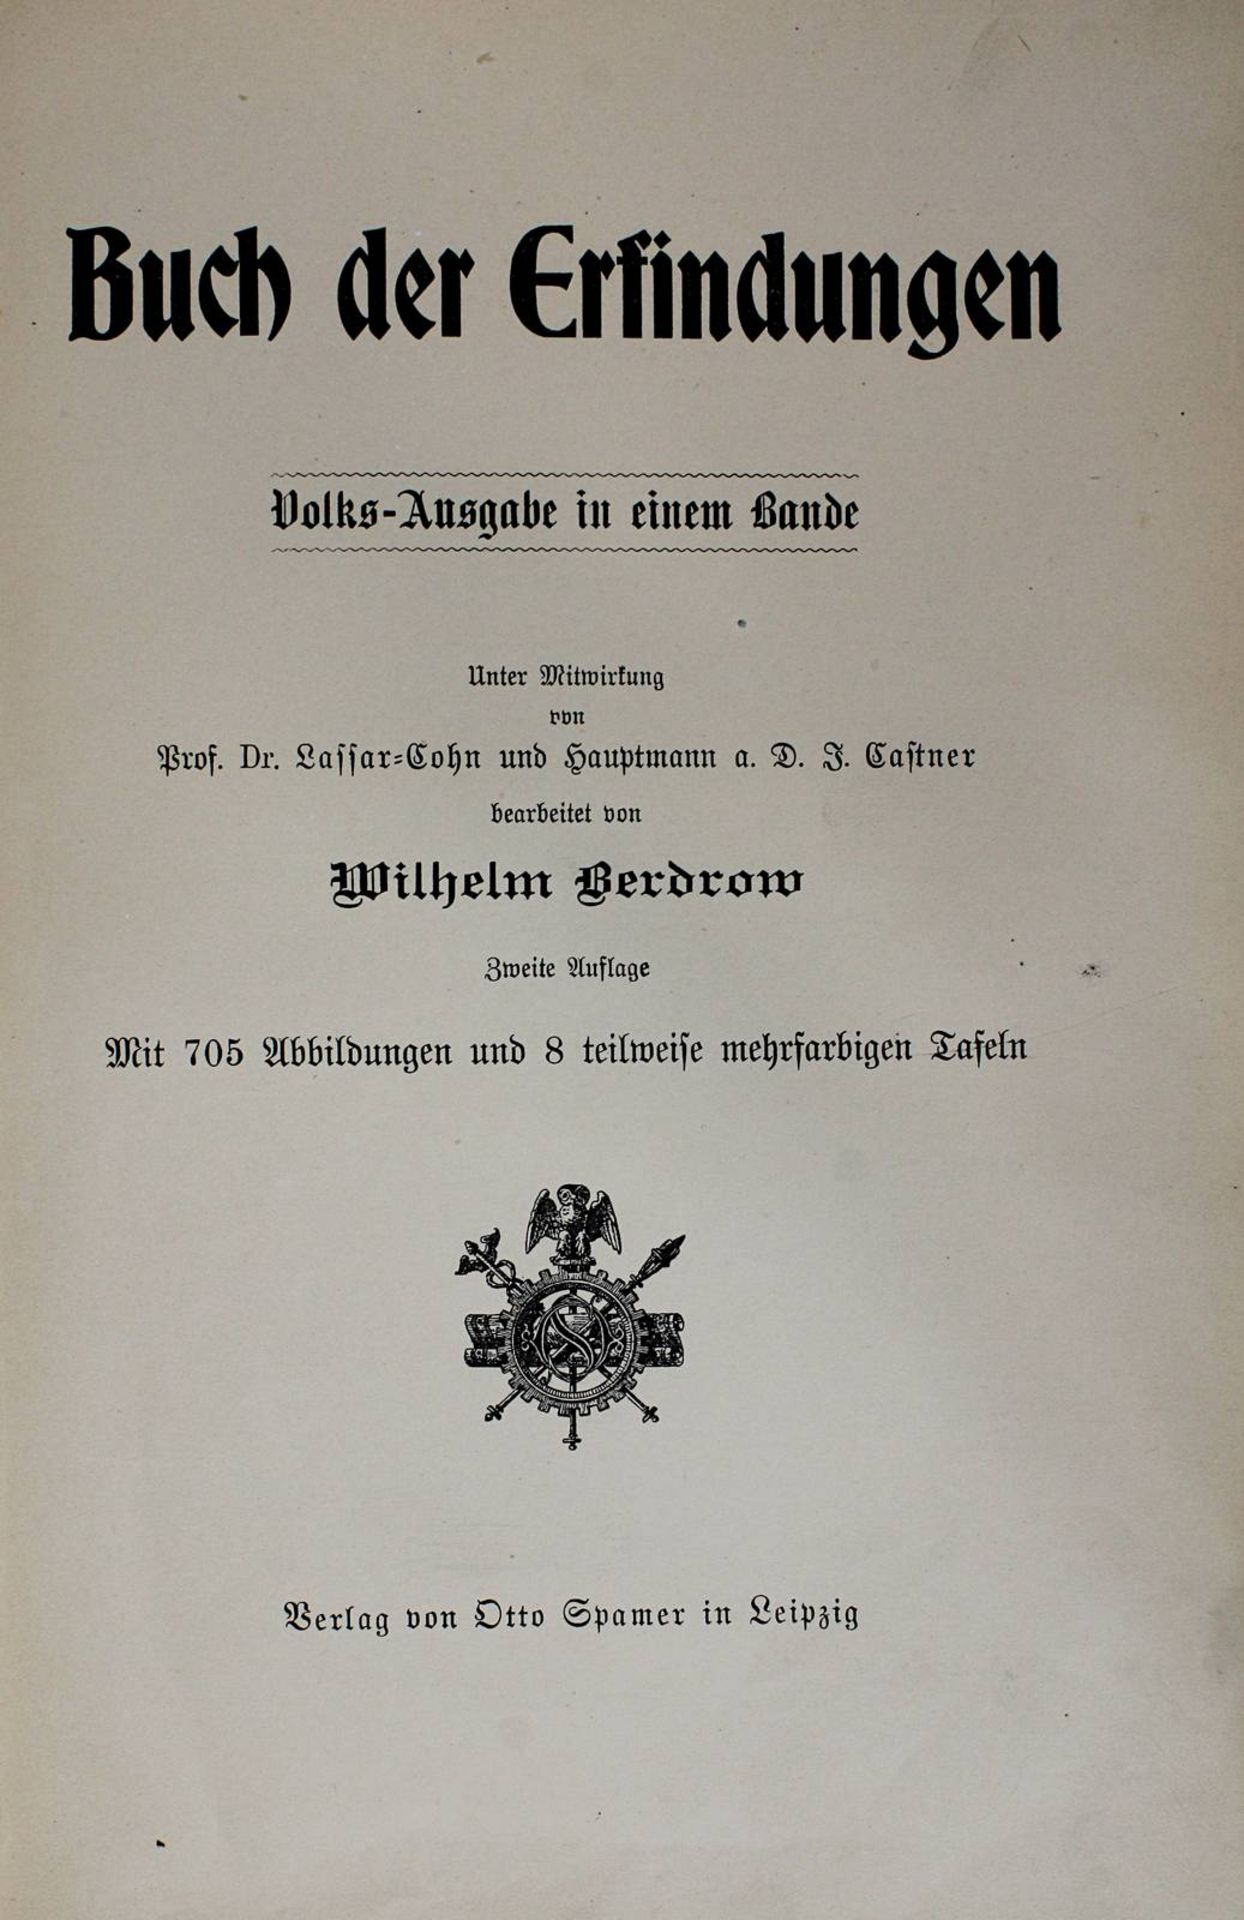 Lueger, Otto "Lexikon der gesamten Technik und ihrer Hilfswissenschaften", zweite Auflage, 8 - Bild 3 aus 3